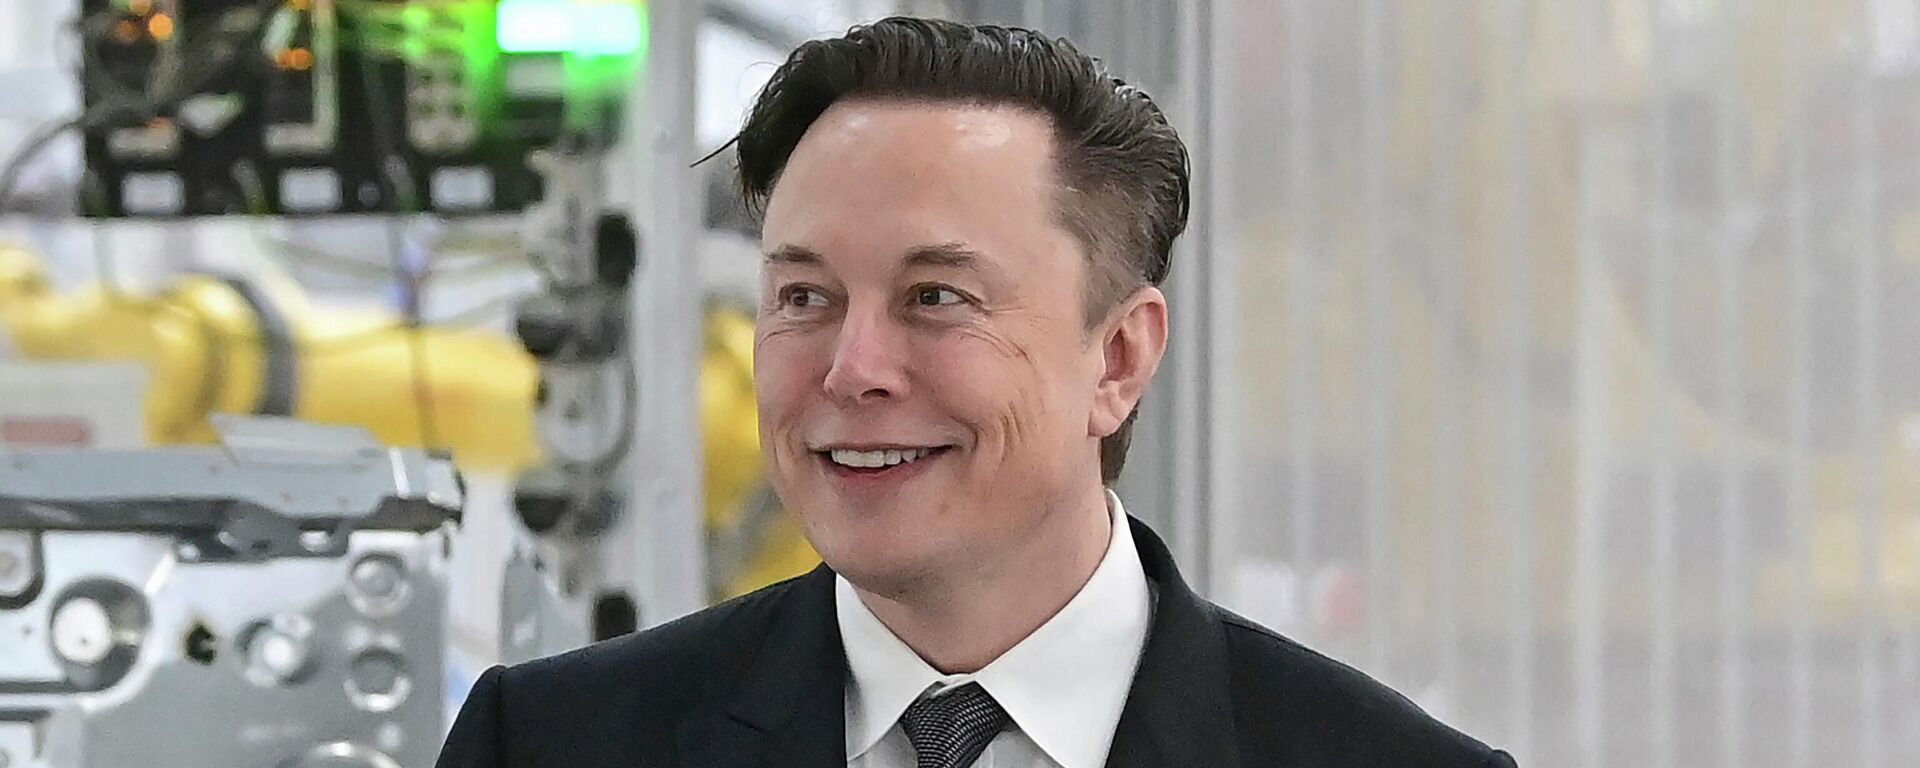 Tesla CEO Elon Musk attends the opening of the Tesla factory Berlin Brandenburg in Gruenheide, Germany, March 22, 2022. - Sputnik International, 1920, 20.10.2022